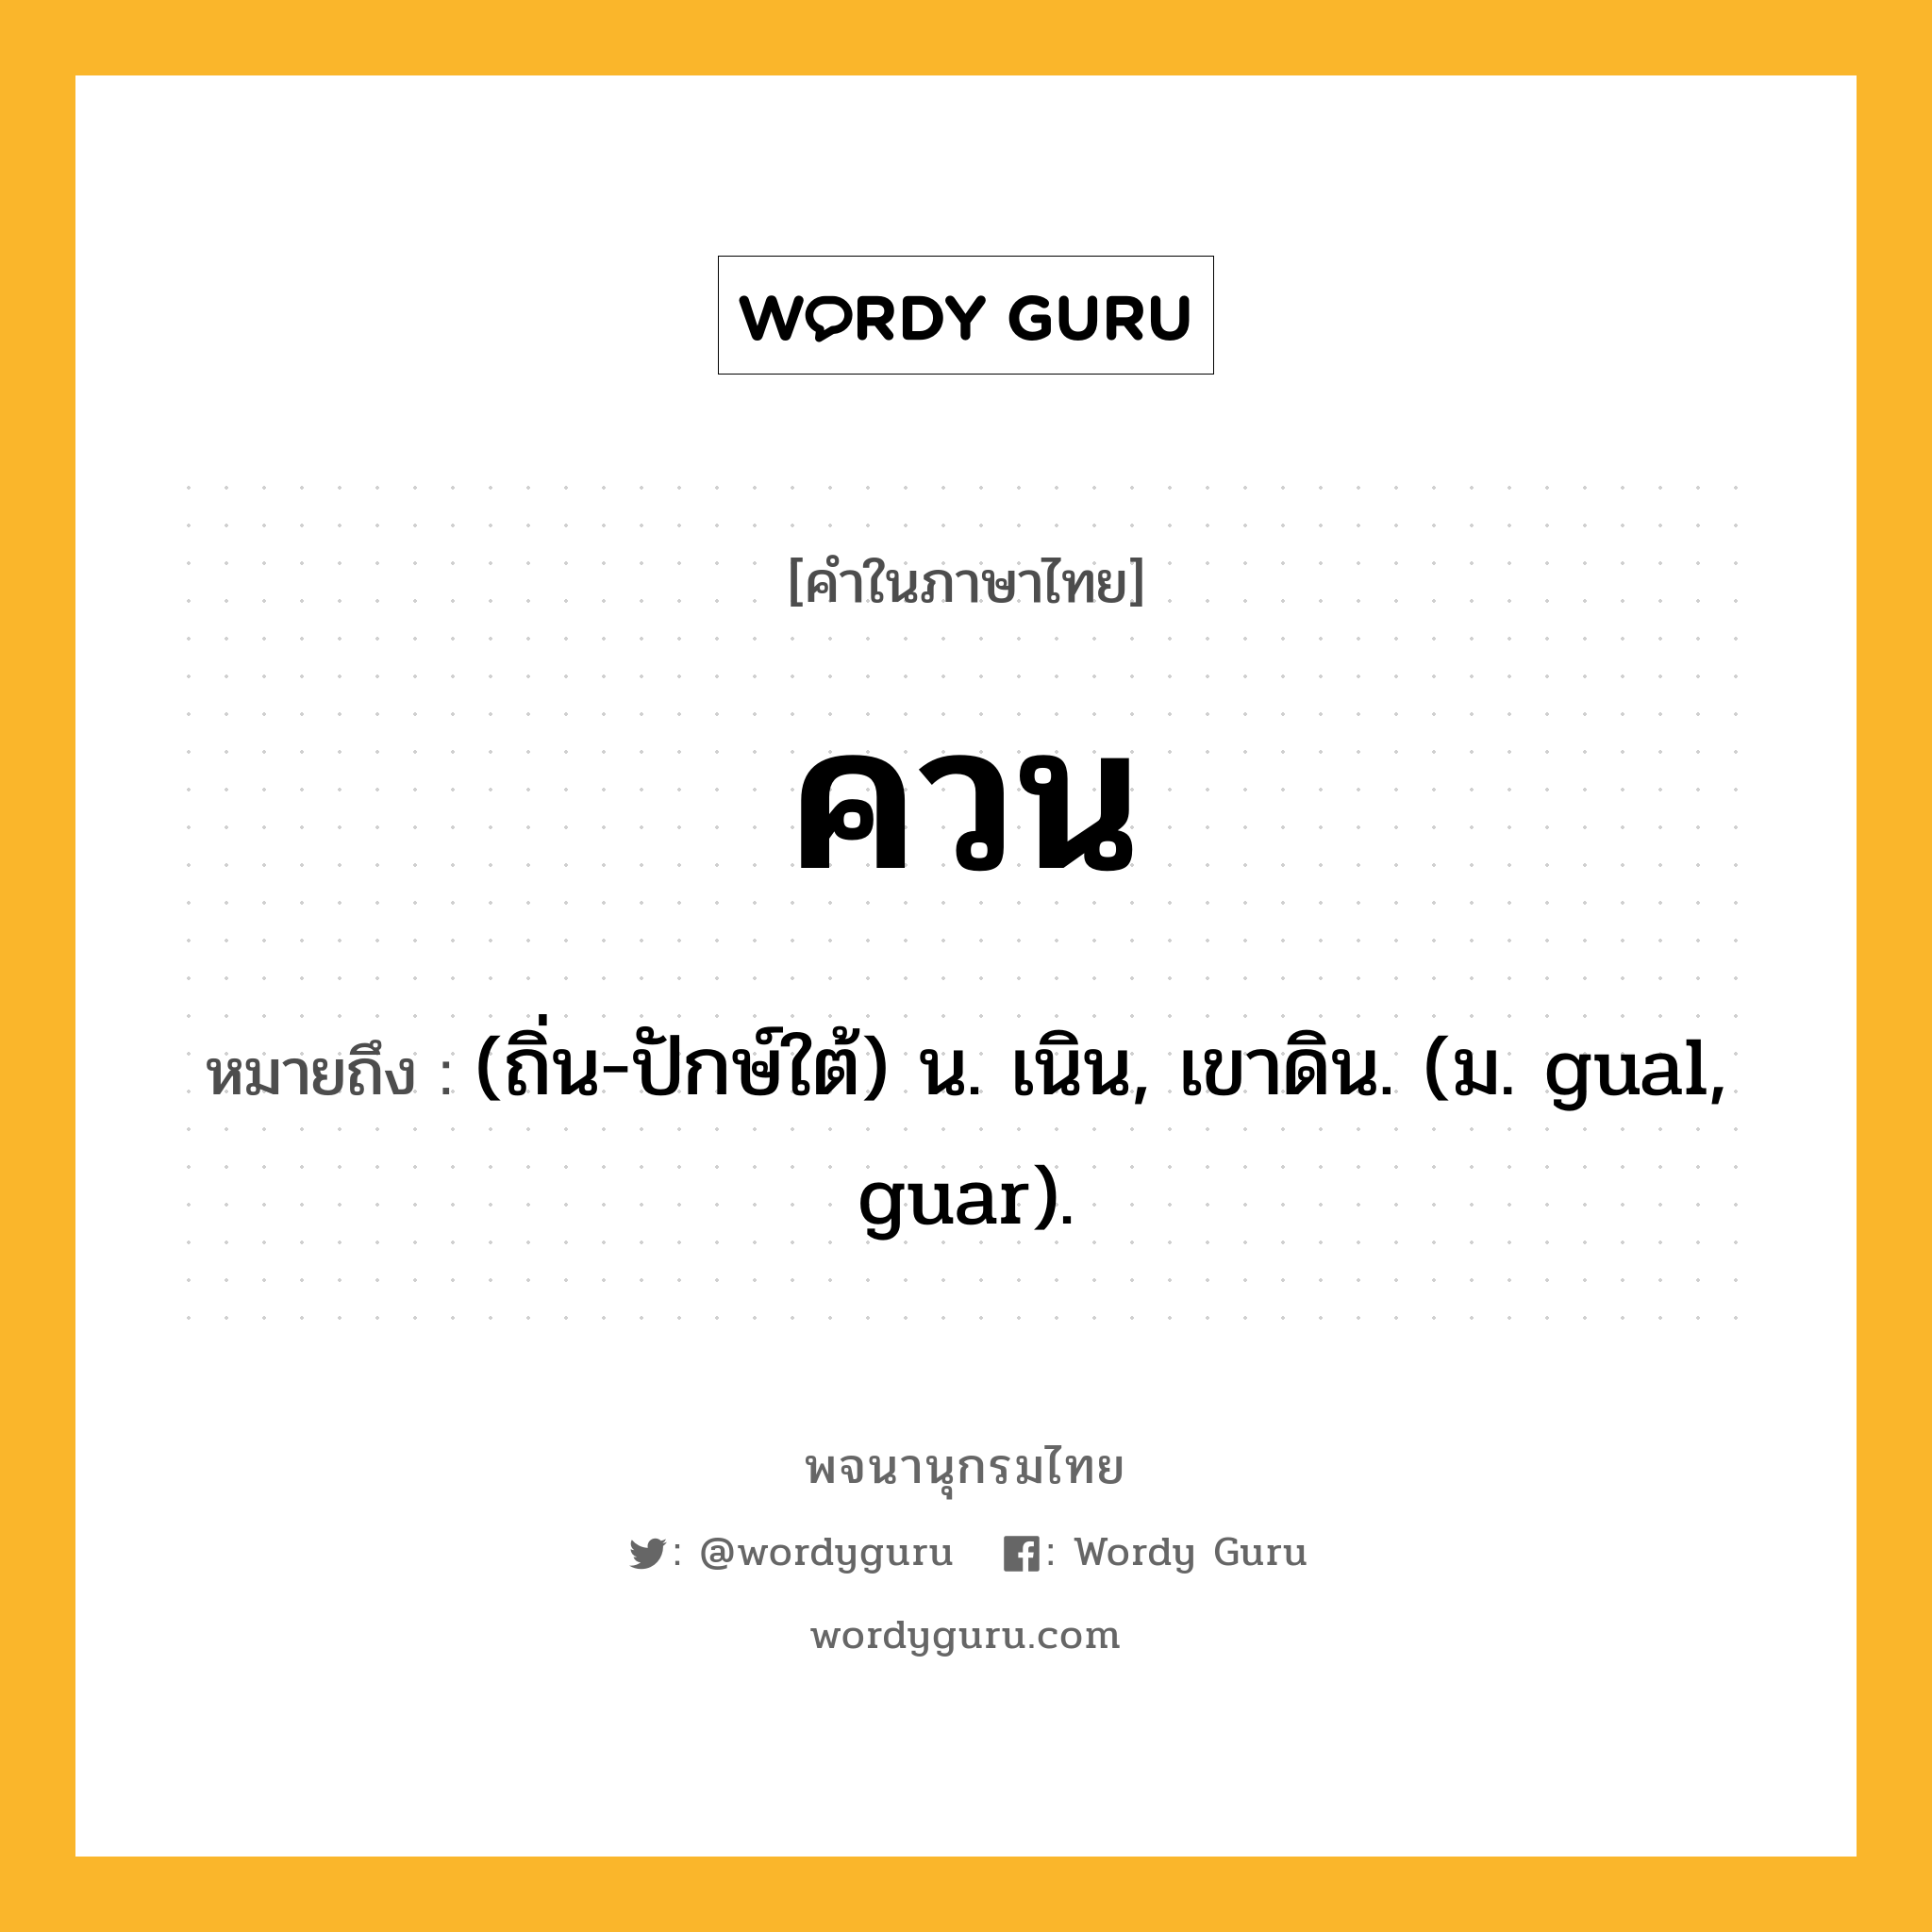 ควน หมายถึงอะไร?, คำในภาษาไทย ควน หมายถึง (ถิ่น-ปักษ์ใต้) น. เนิน, เขาดิน. (ม. gual, guar).